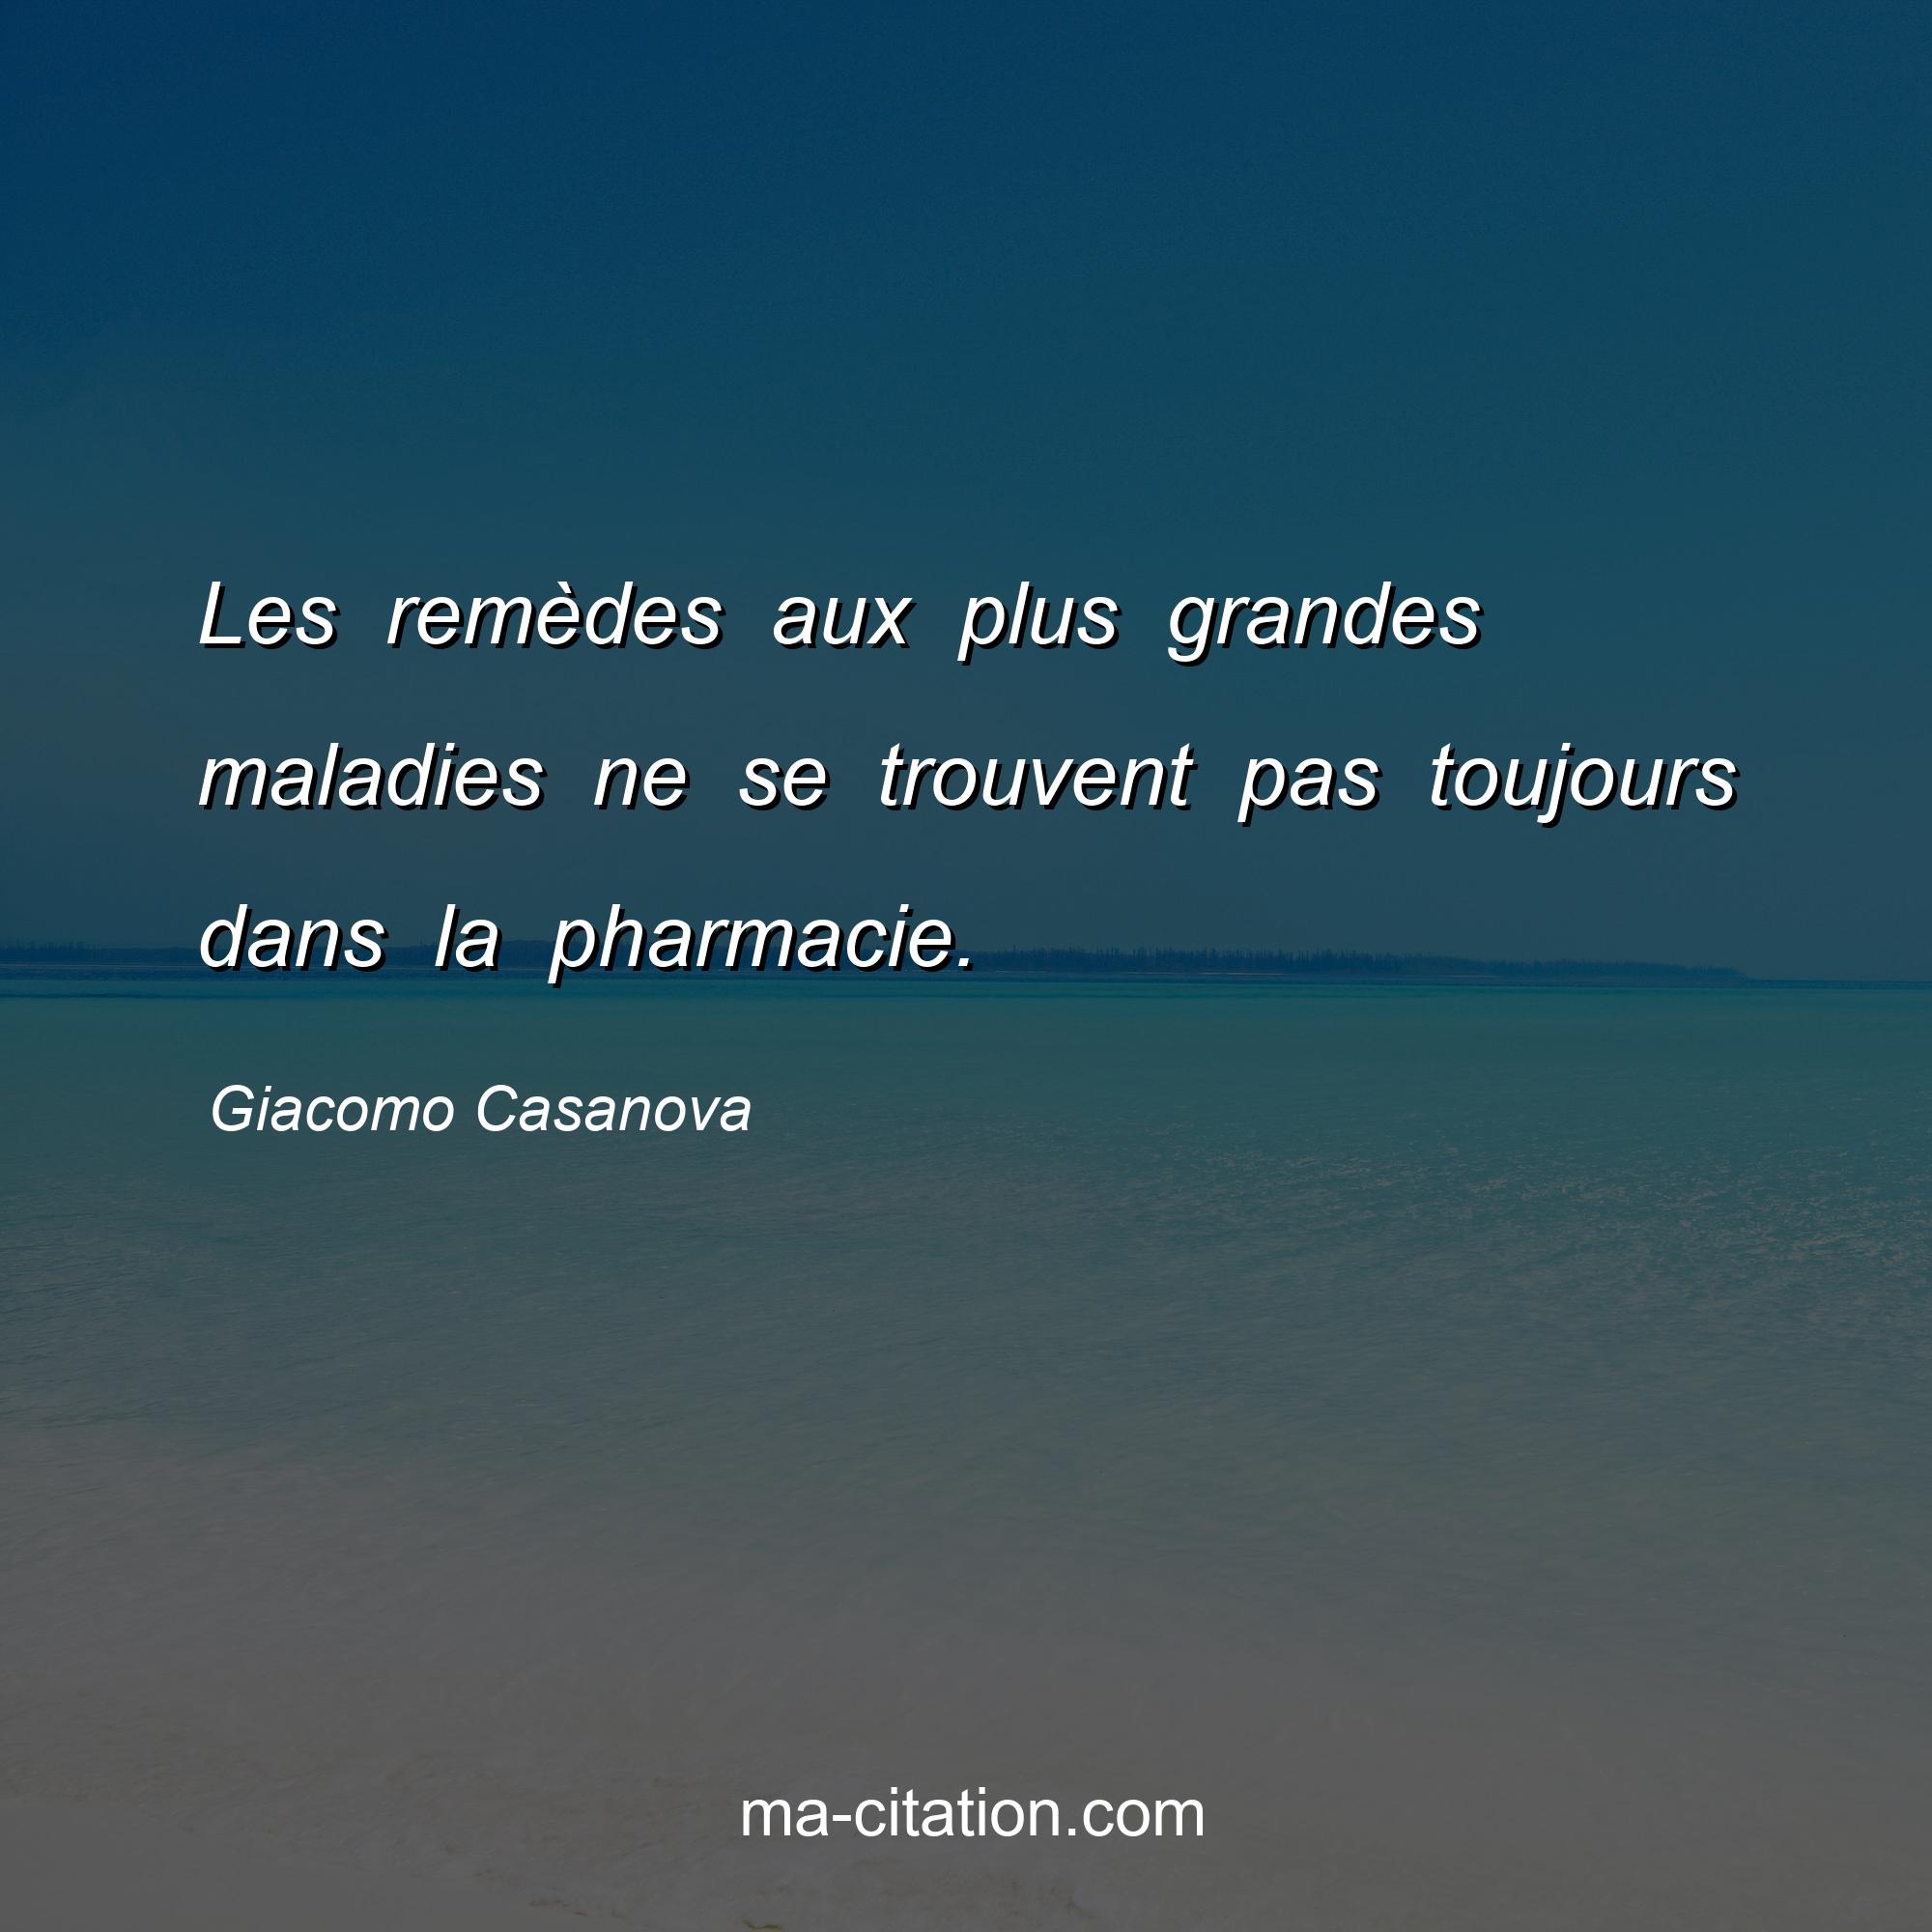 Giacomo Casanova : Les remèdes aux plus grandes maladies ne se trouvent pas toujours dans la pharmacie.